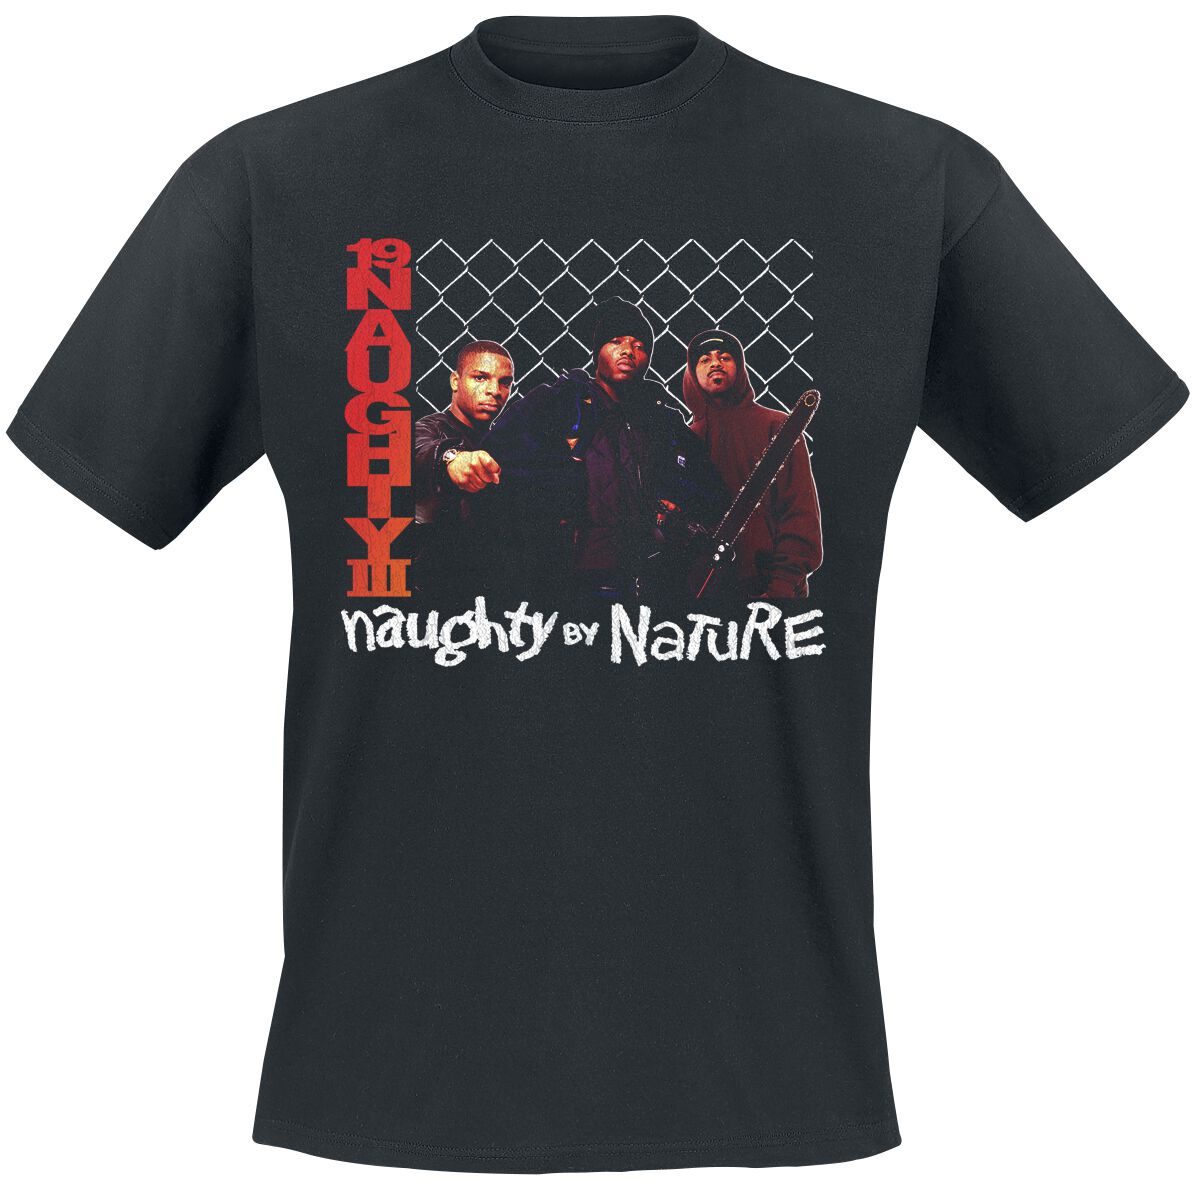 Naughty by Nature T-Shirt - 19 Naughty 111 - S bis 3XL - für Männer - Größe S - schwarz  - Lizenziertes Merchandise!